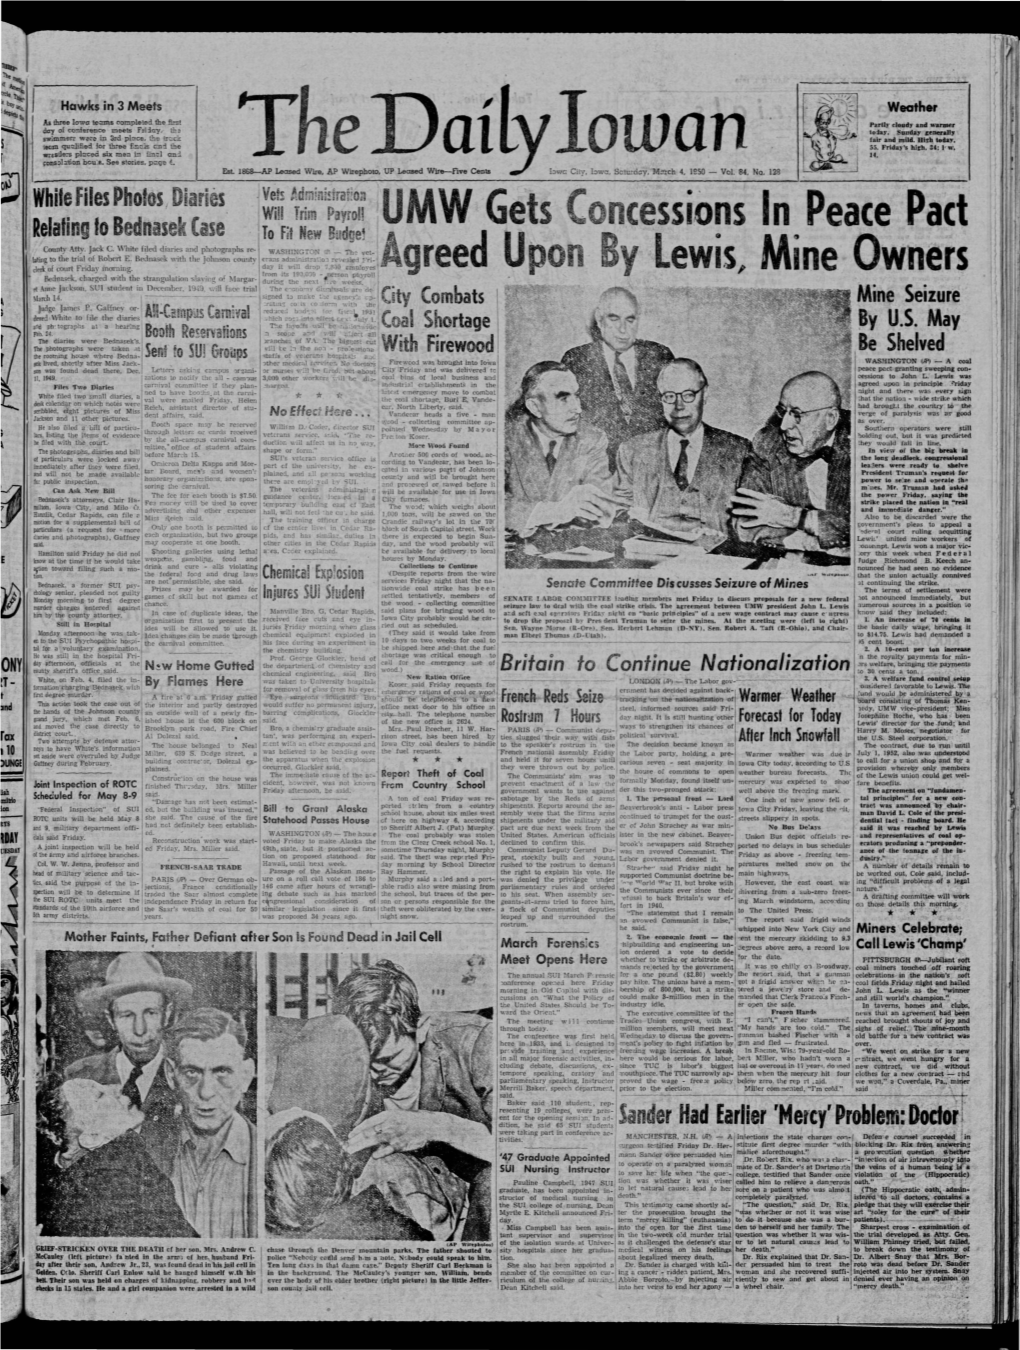 Daily Iowan (Iowa City, Iowa), 1950-03-04